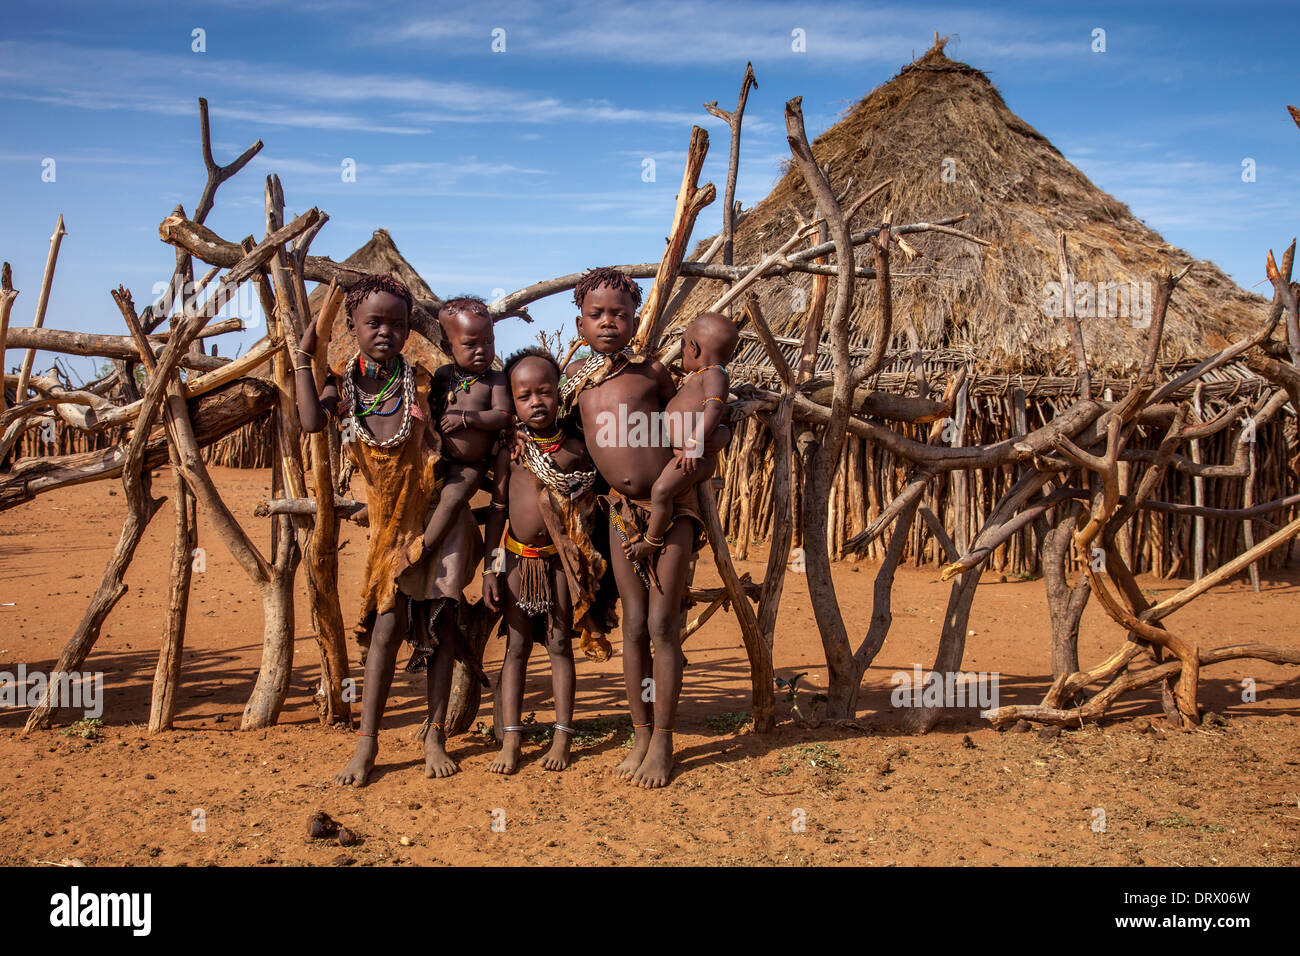 Un groupe d'enfants dans un village près de tribu Hamer Turmi, vallée de l'Omo, Ethiopie Banque D'Images